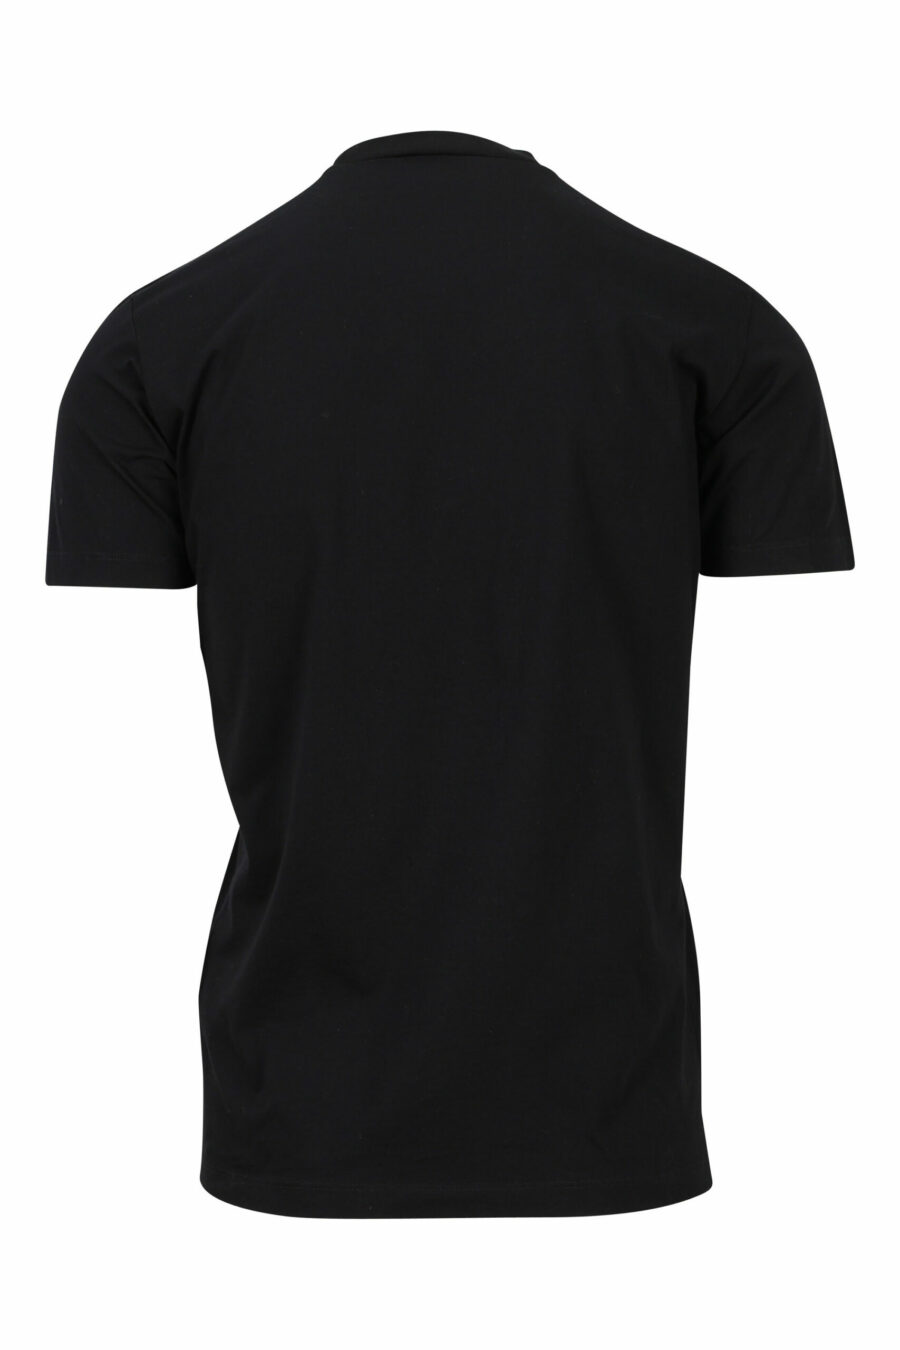 T-shirt preta com maxilogo monocromático em relevo - 8052134946459 1 scaled